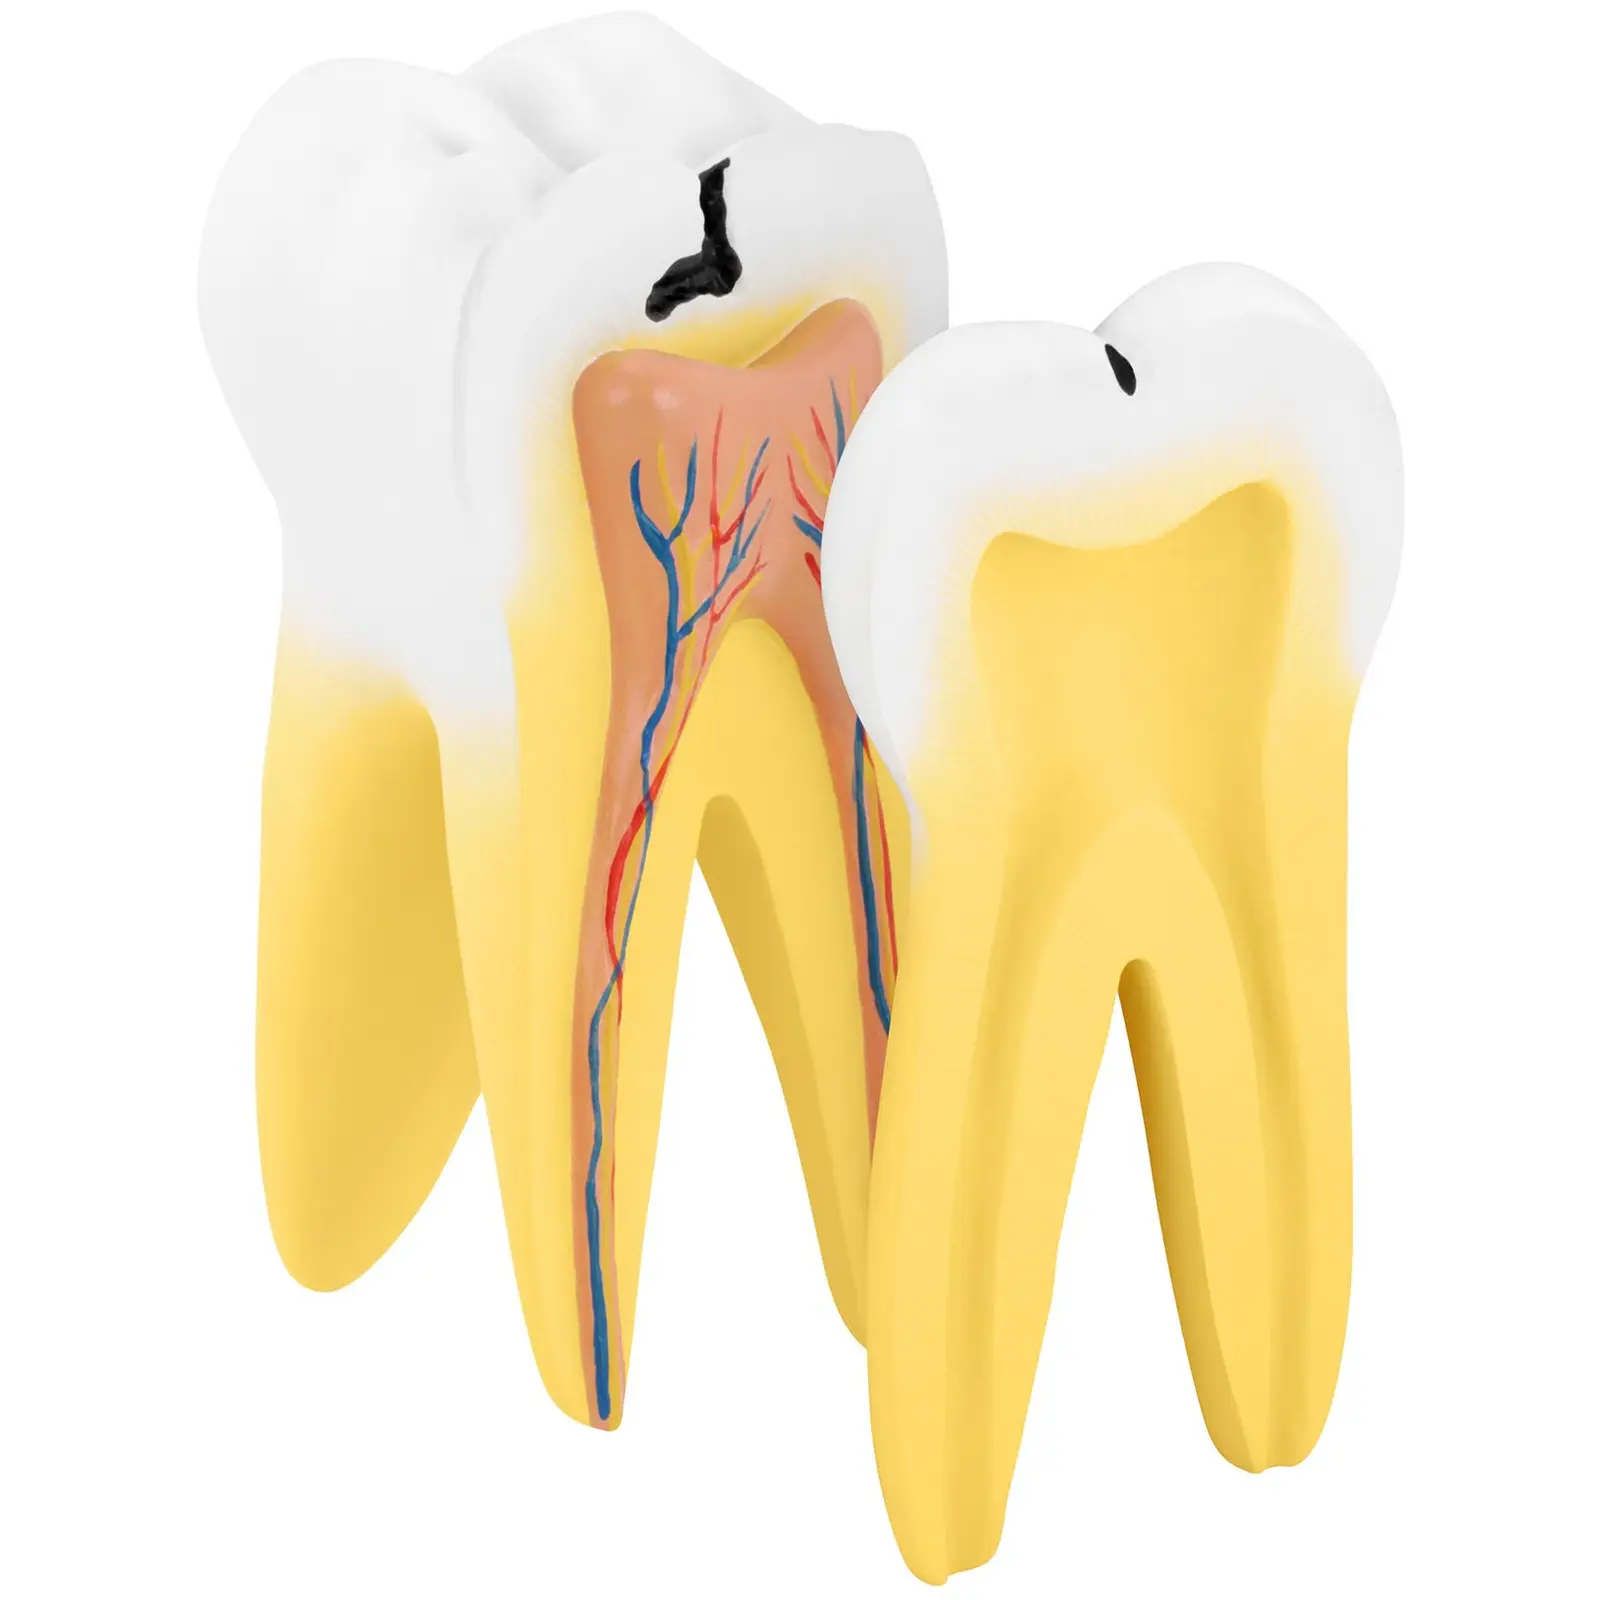 Dente molar - modelo anatómico